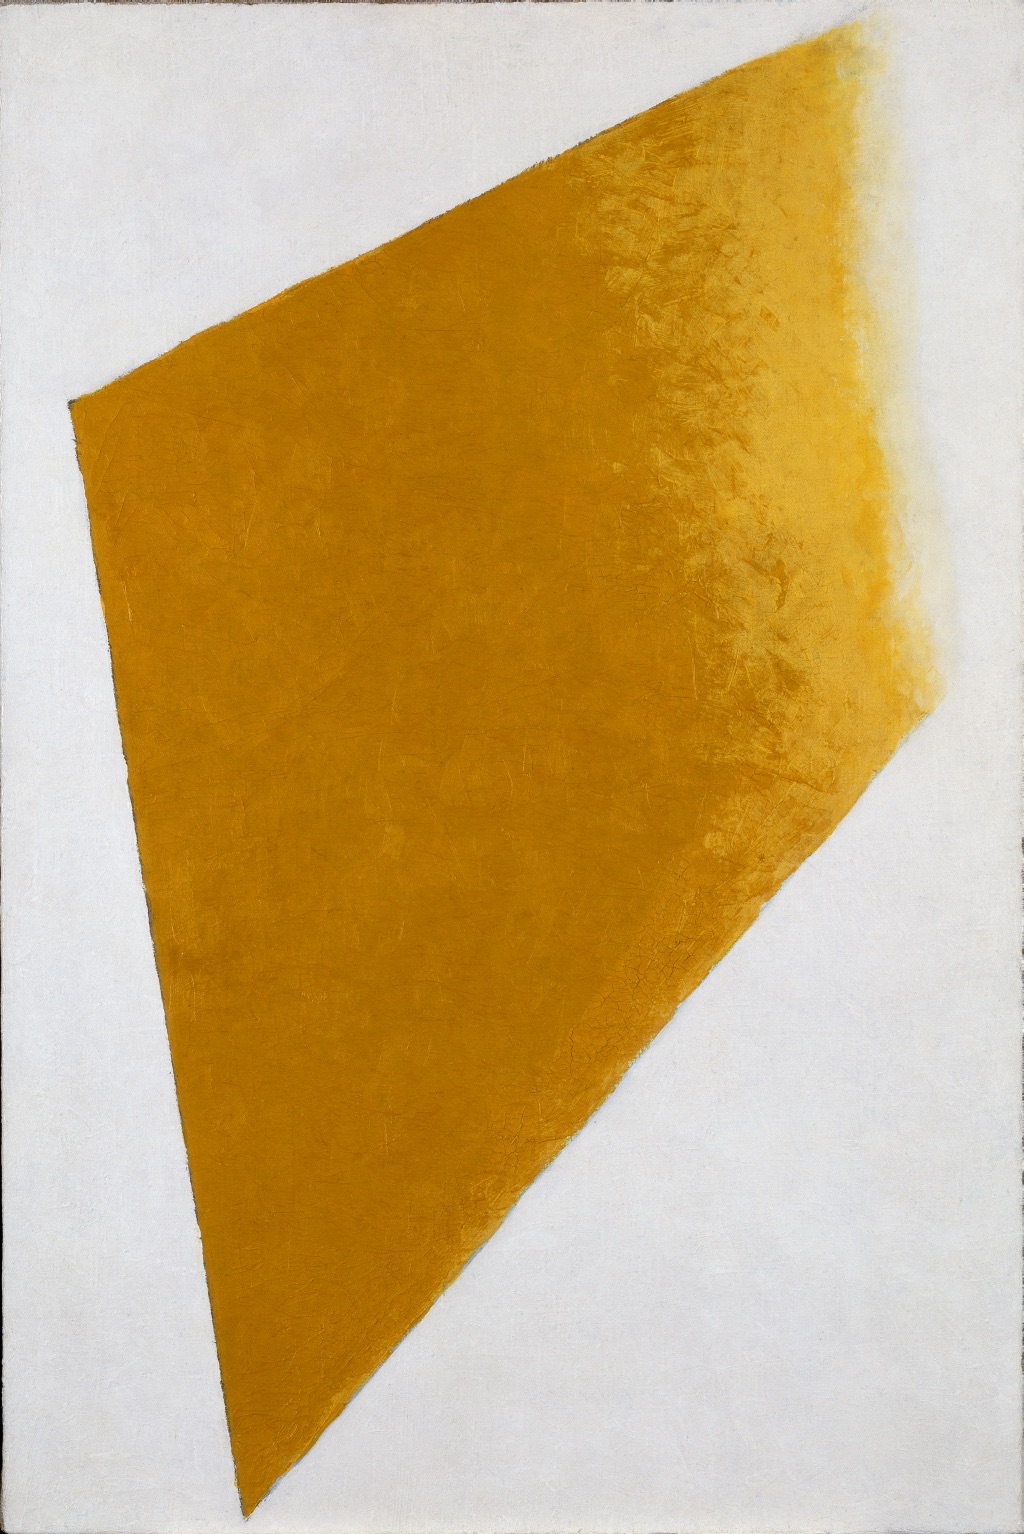 Κίτρινο Επίπεδο σε Διάλυση by Kazimir Malevich - 1917-1918 - 109 x 73.5 x 4.5 cm 